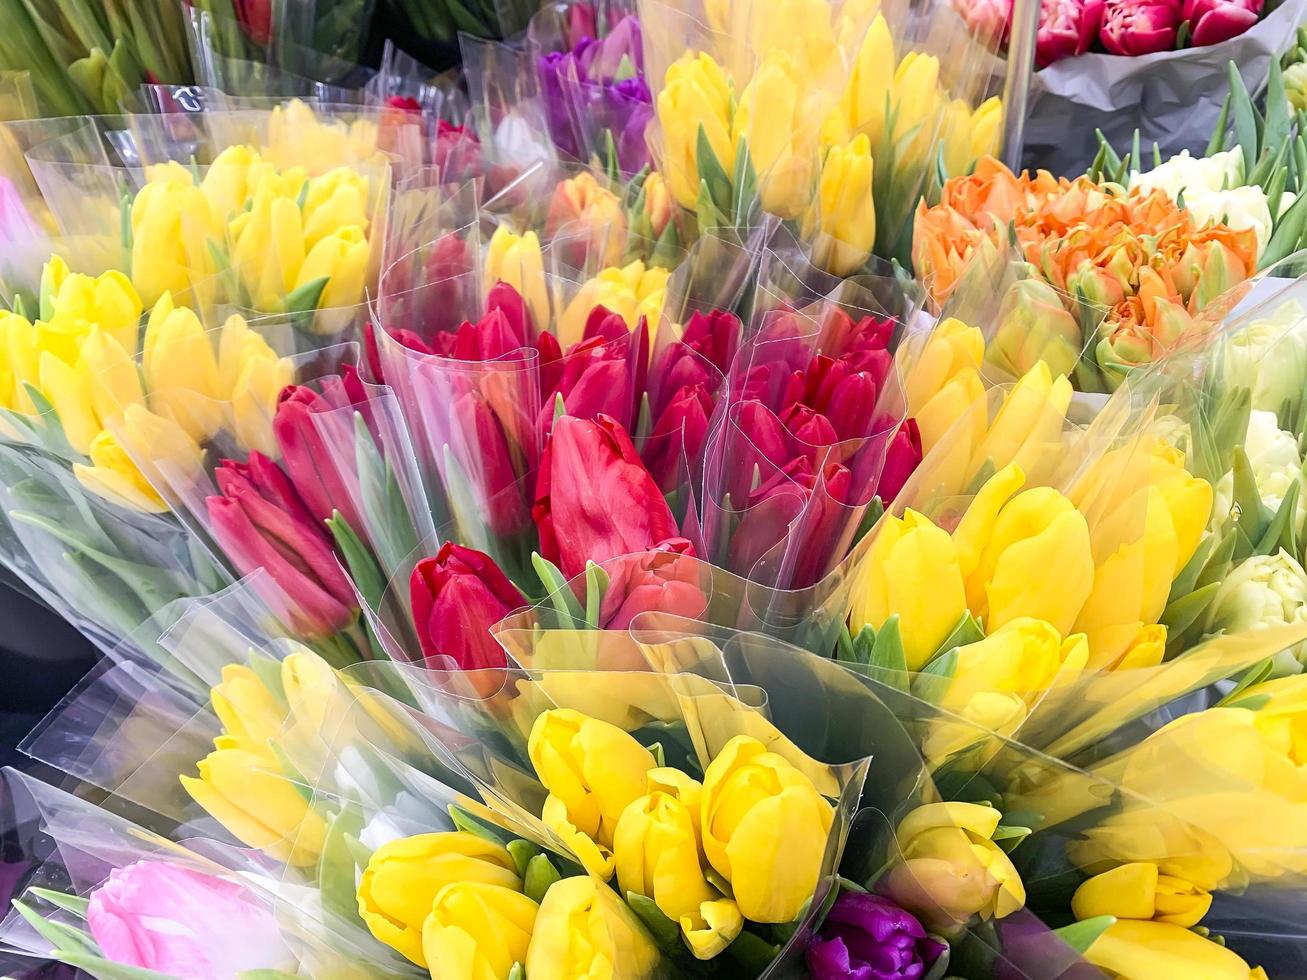 lujosos ramos de tulipanes multicolores. Flores de primavera. regalos. foto de estudio